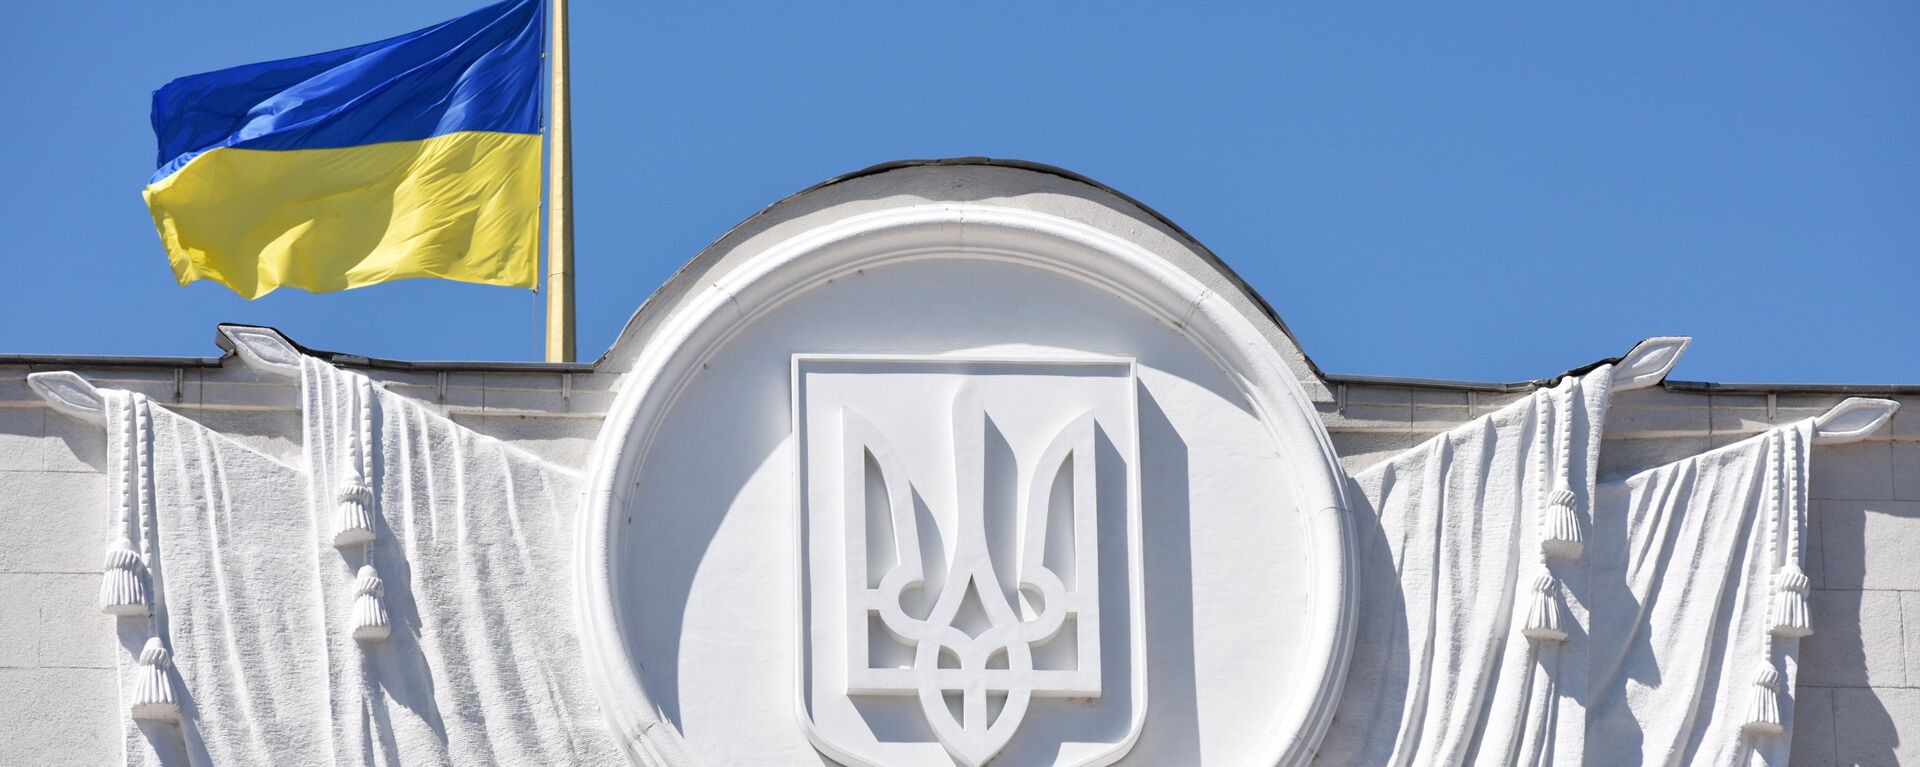 Флаг Украины на здании Верховной рады в Киеве - Sputnik Абхазия, 1920, 27.02.2021